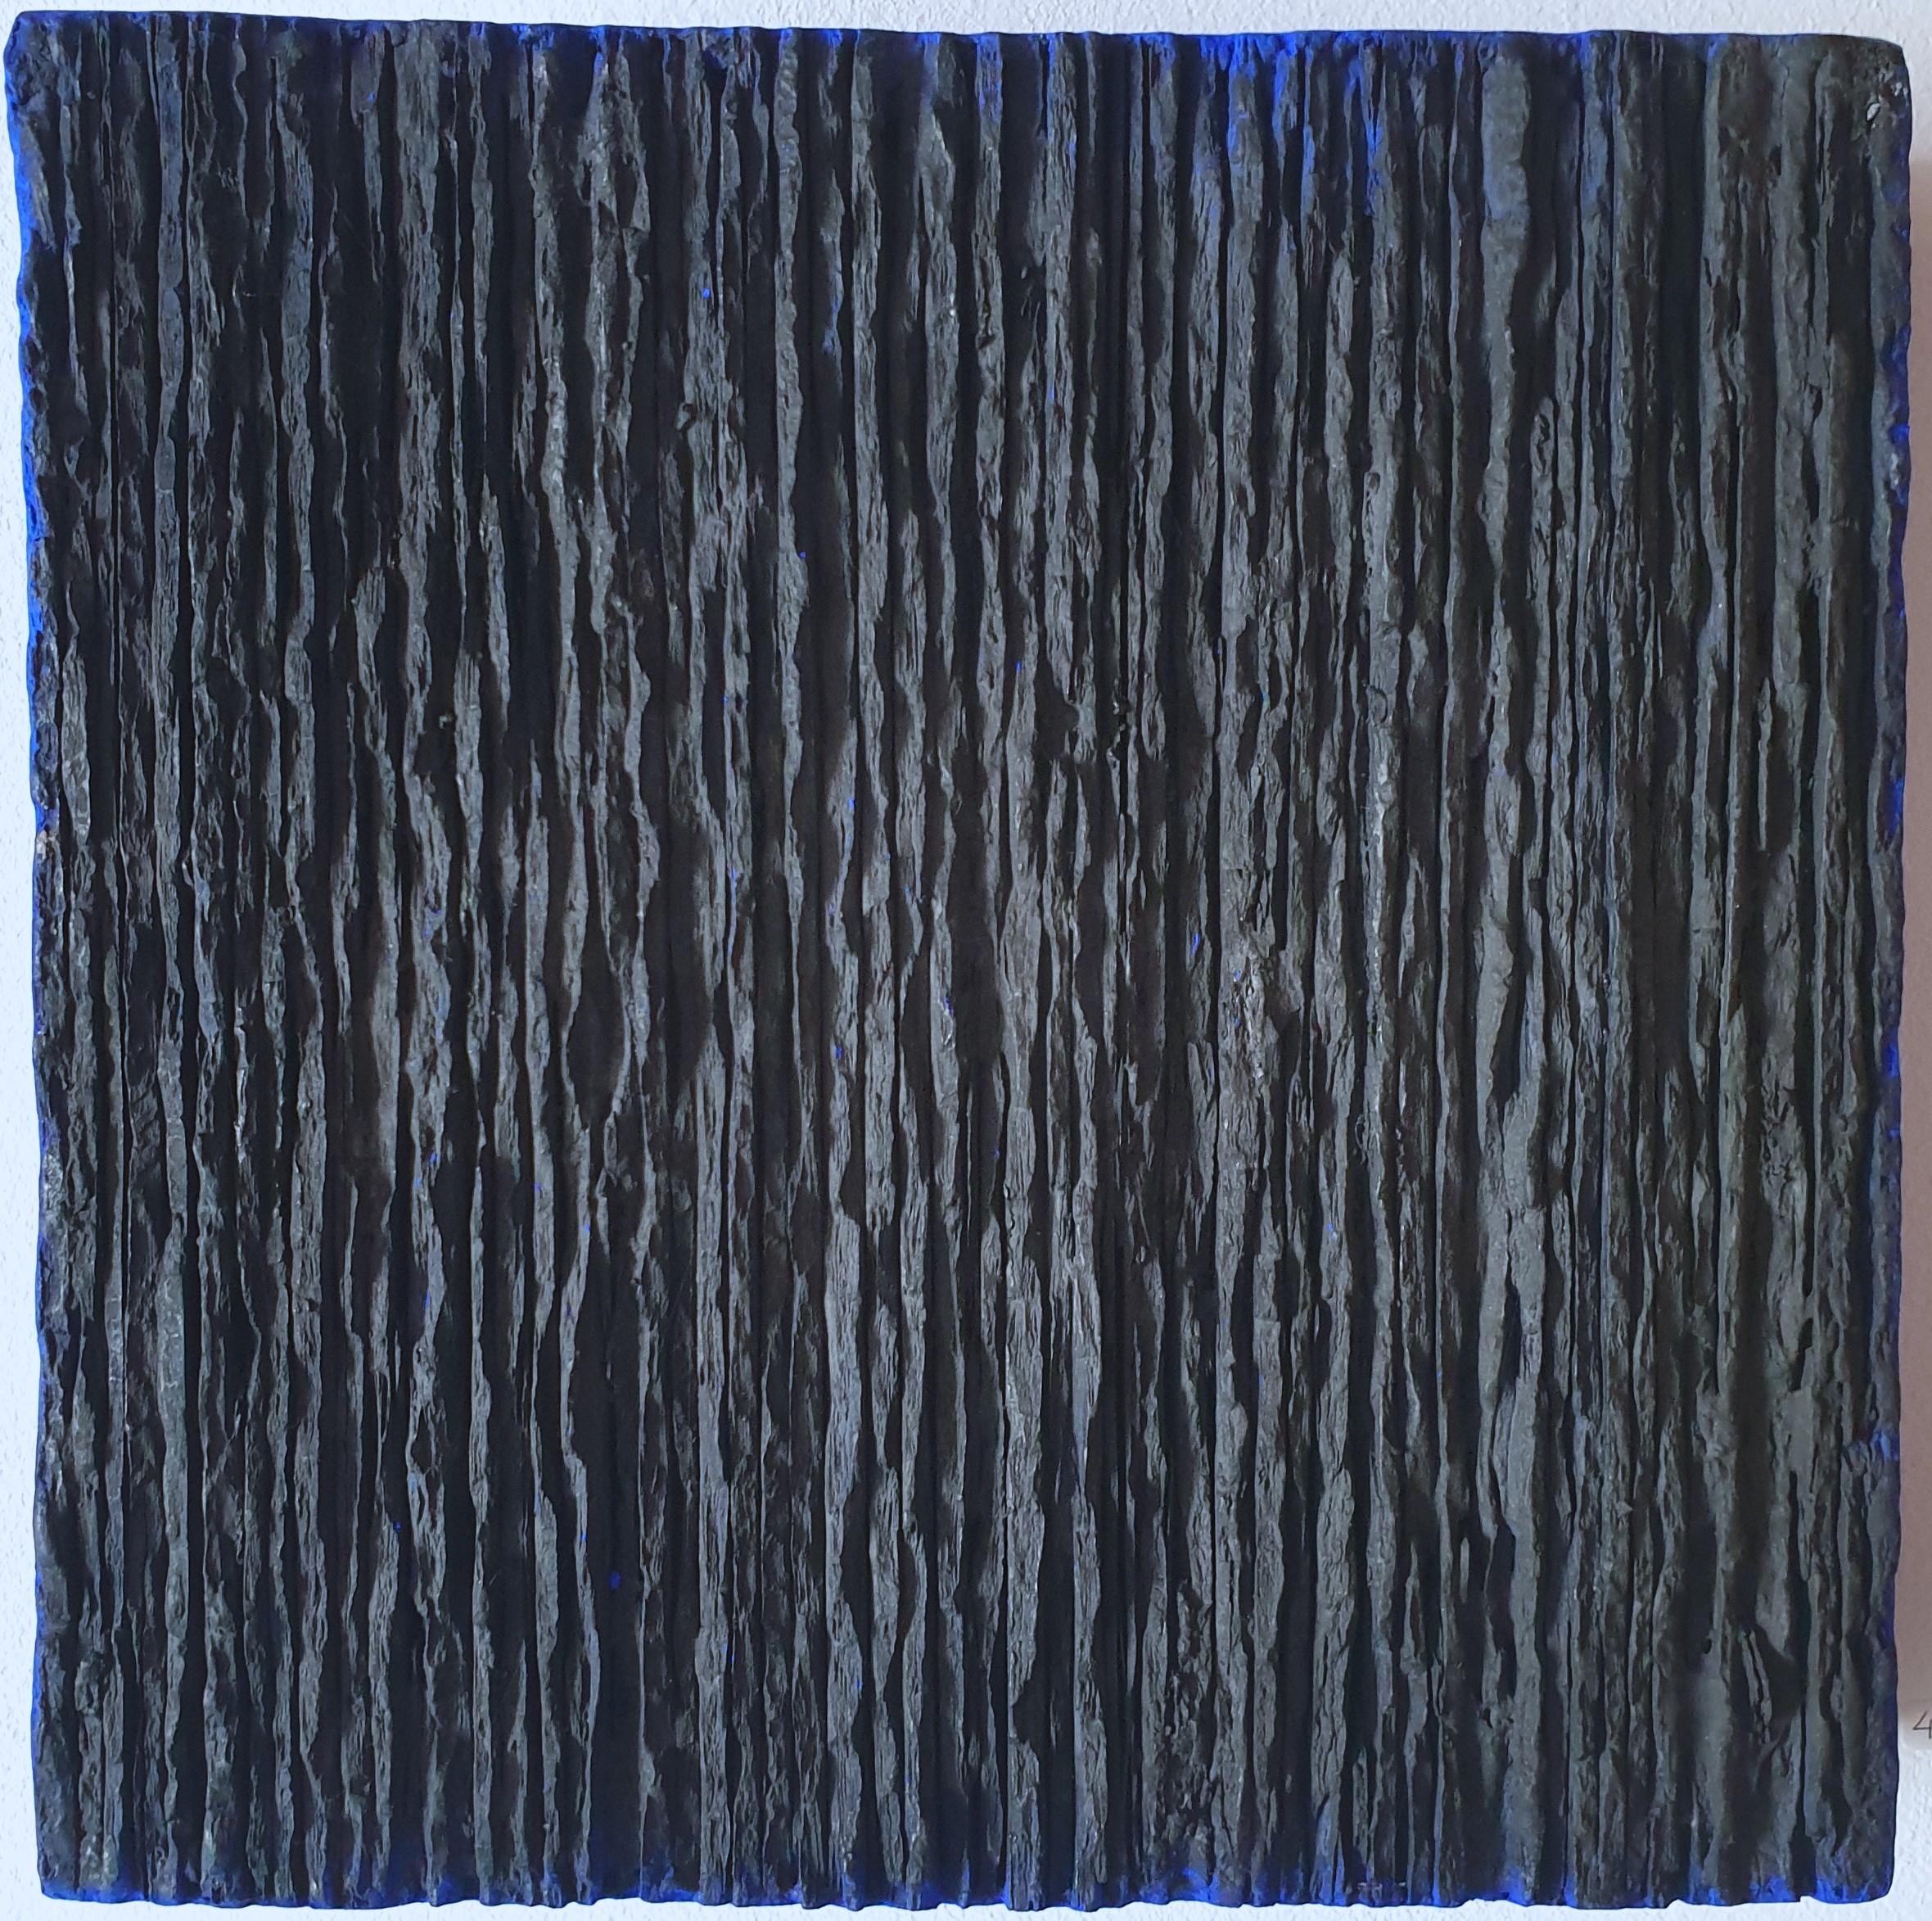 Space - schwarz blau zeitgenössische moderne abstrakte skulptur malerei relief